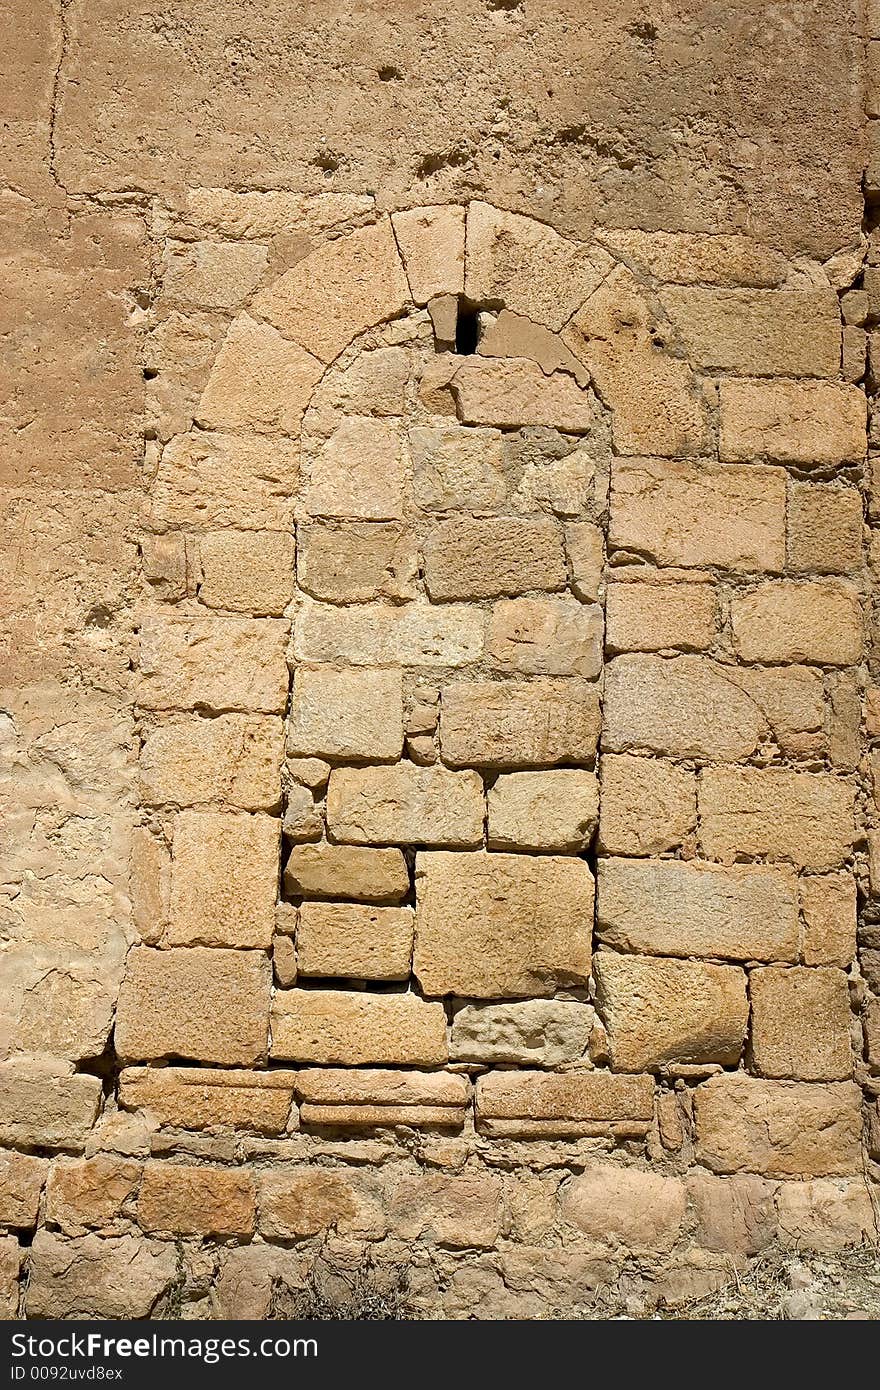 Blocked doorway in Alquezar, Huesca, Aragon, Spain